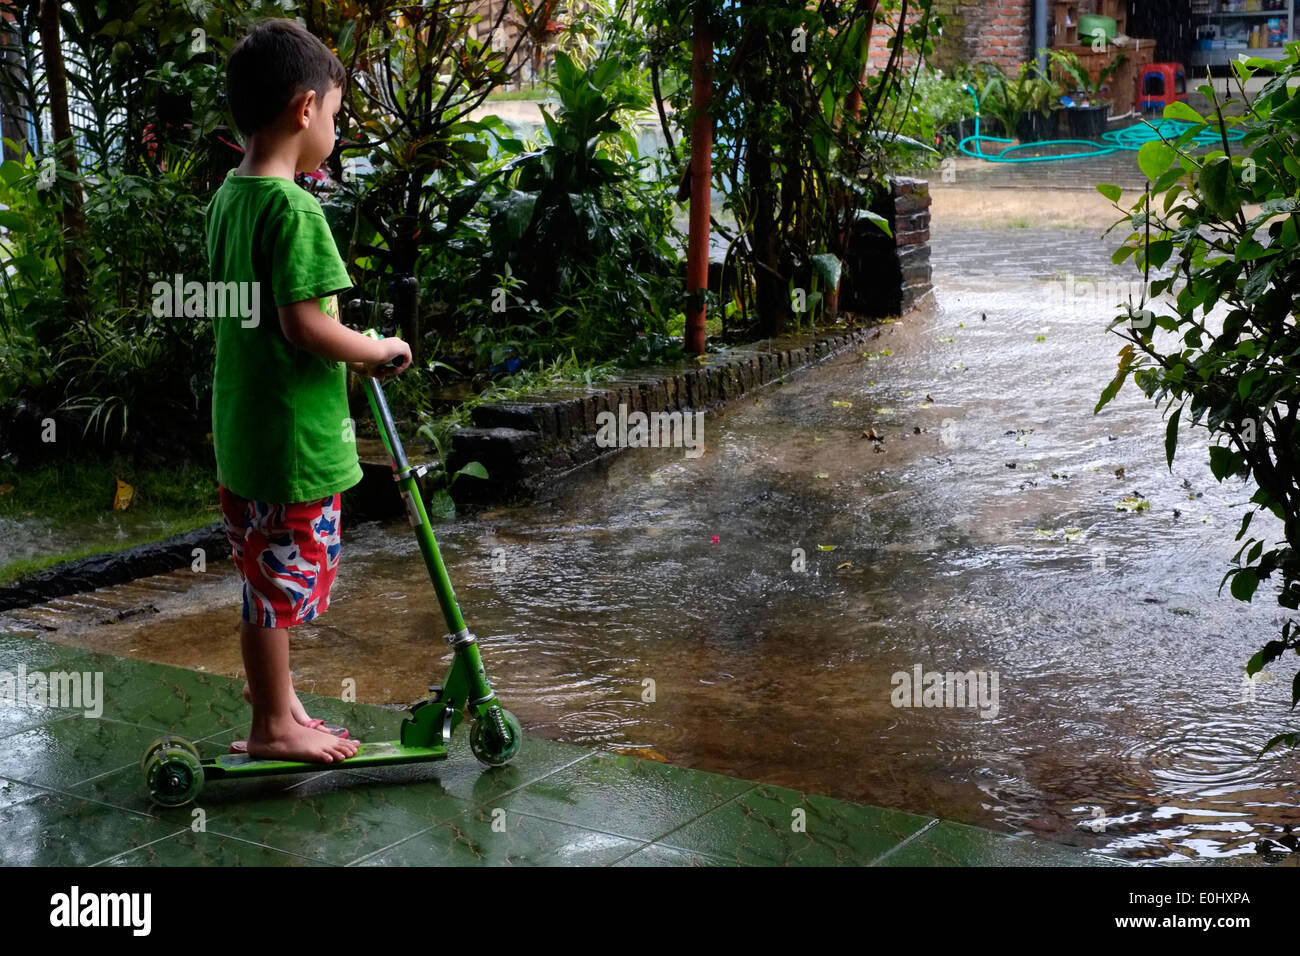 Bambino con il suo scooter cercando wistfully a pioggia come egli attende di uscire e giocare nel villaggio rurale di Indonesia Foto Stock